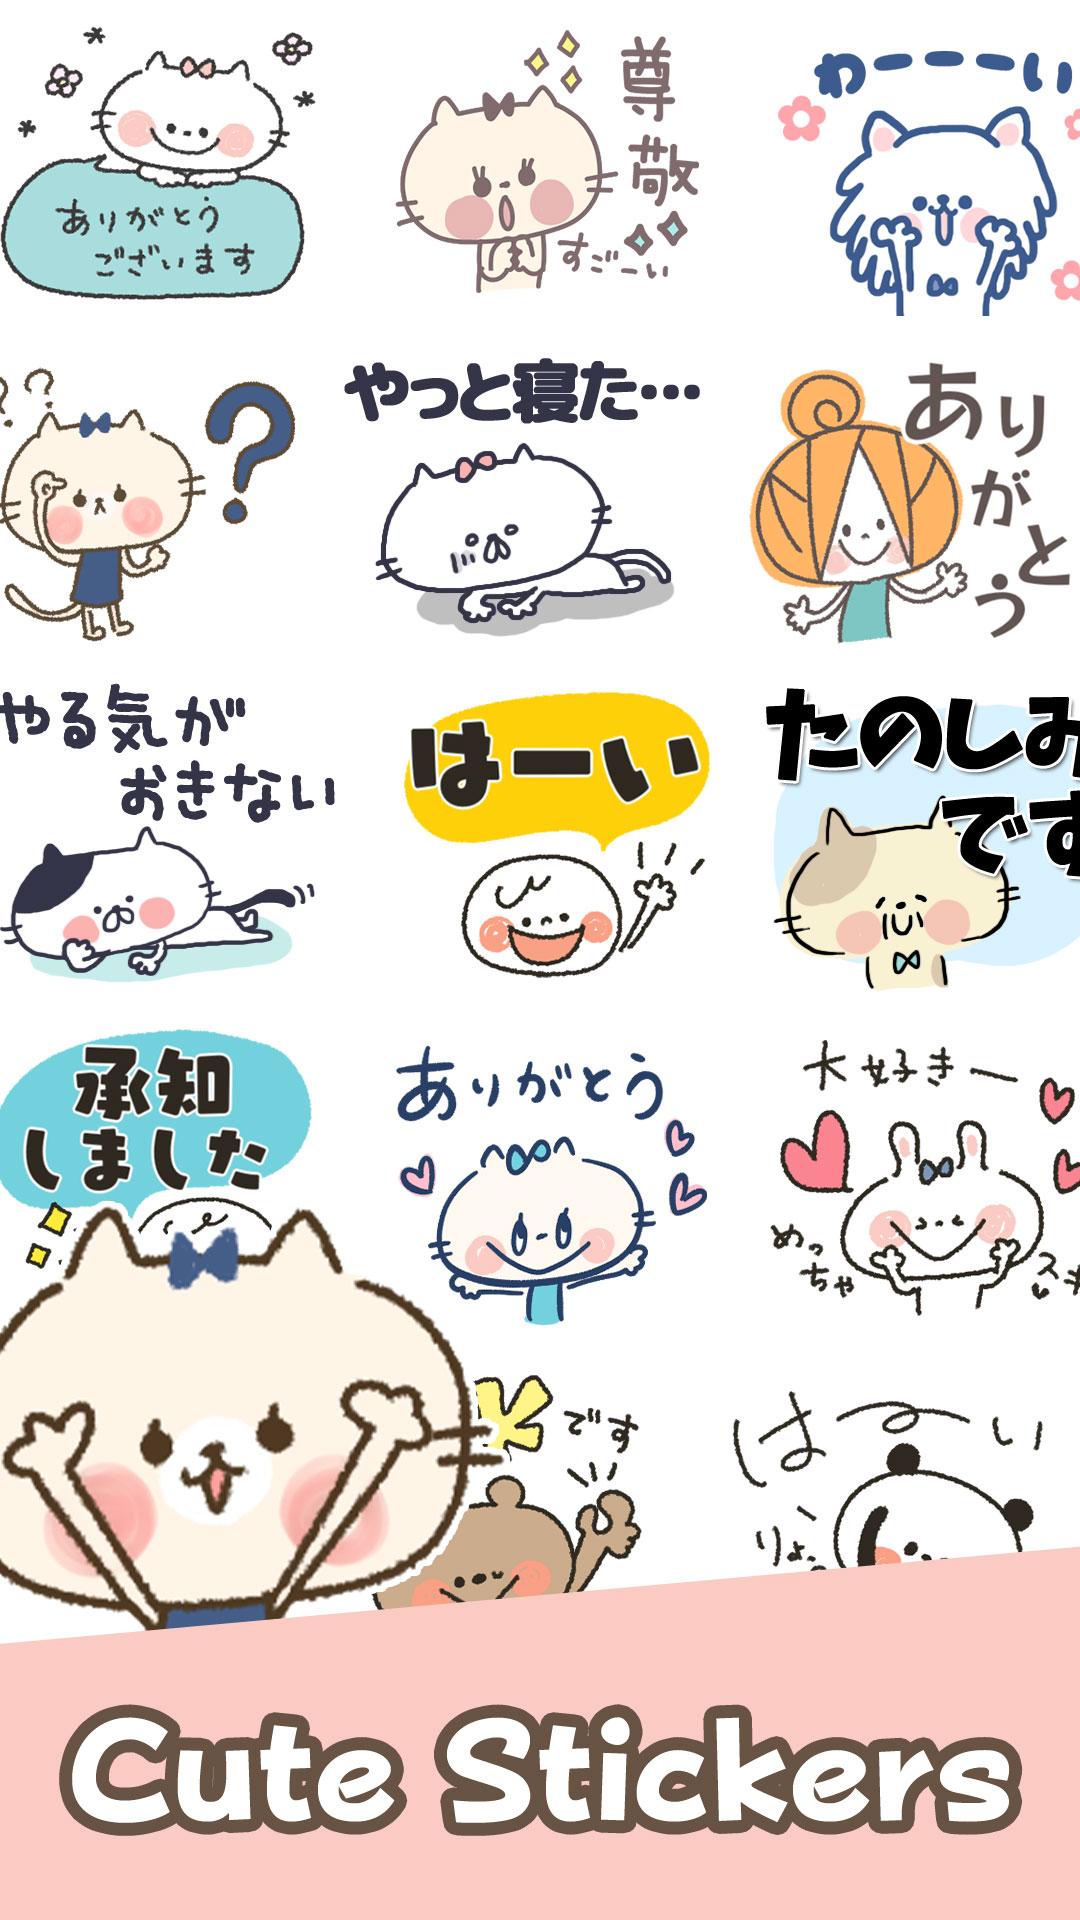 Cute Cat Stickers 1.0.3 Screenshot 1